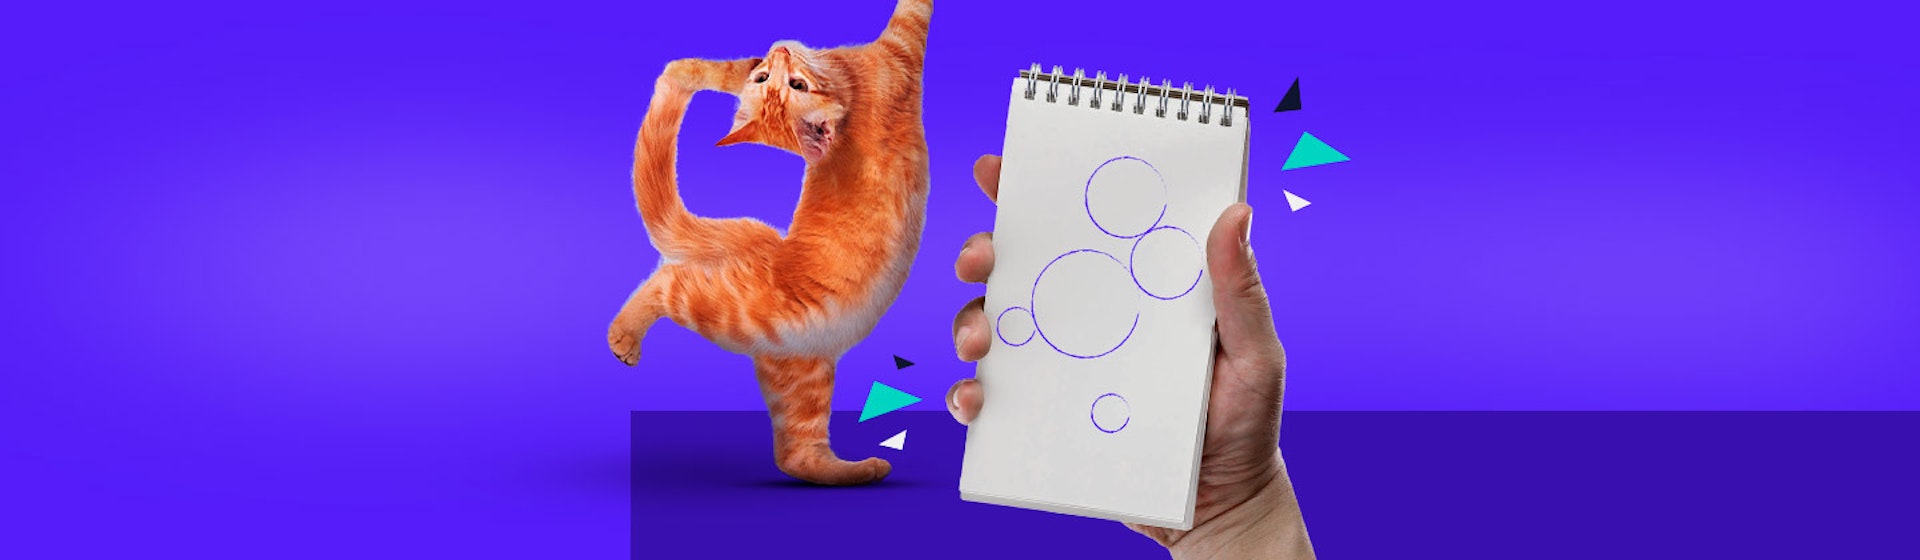 ¿Cómo dibujar un gato realista? Es así de fácil con estos tips que te convertirán en artista